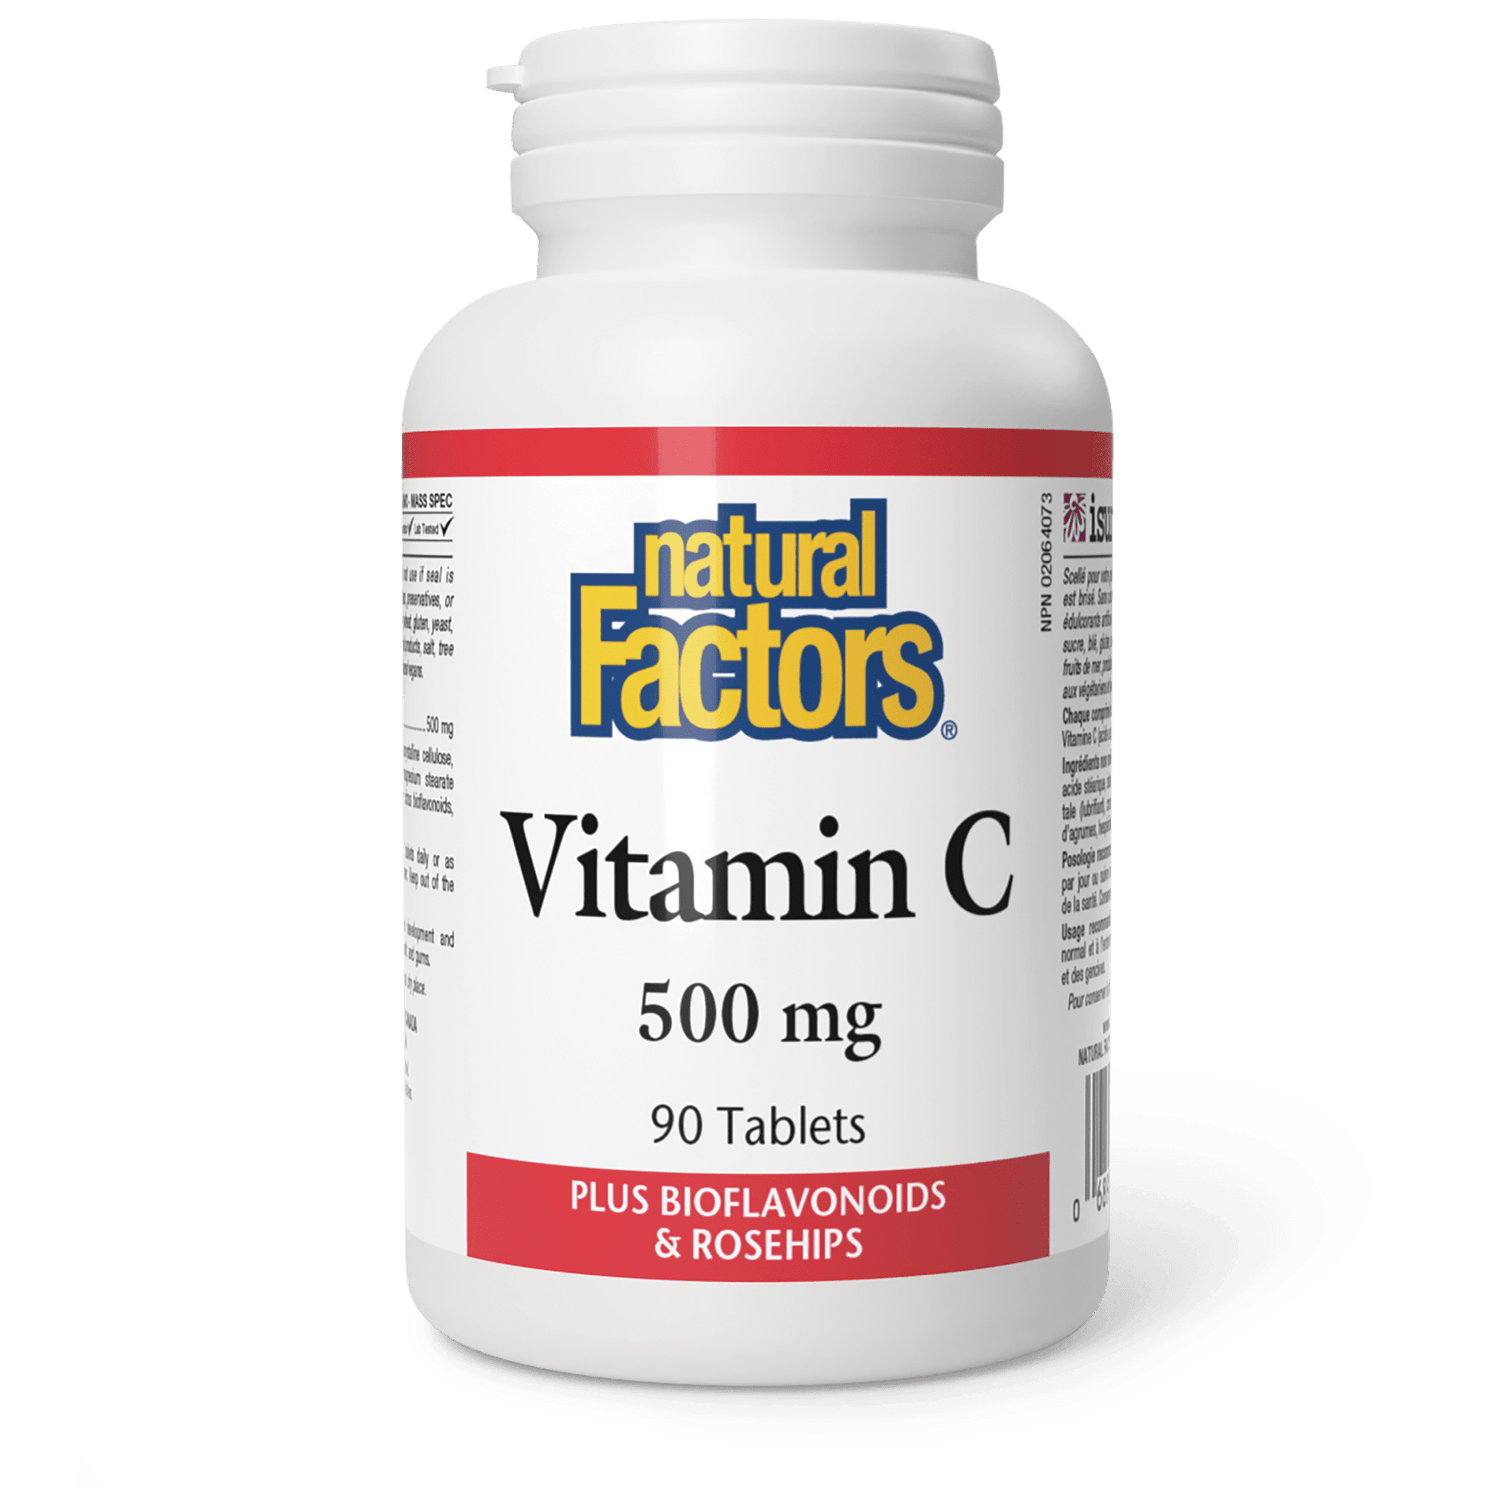 Vitamin C Plus Bioflavonoids & Rosehips 500 mg, Natural Factors|v|image|1300